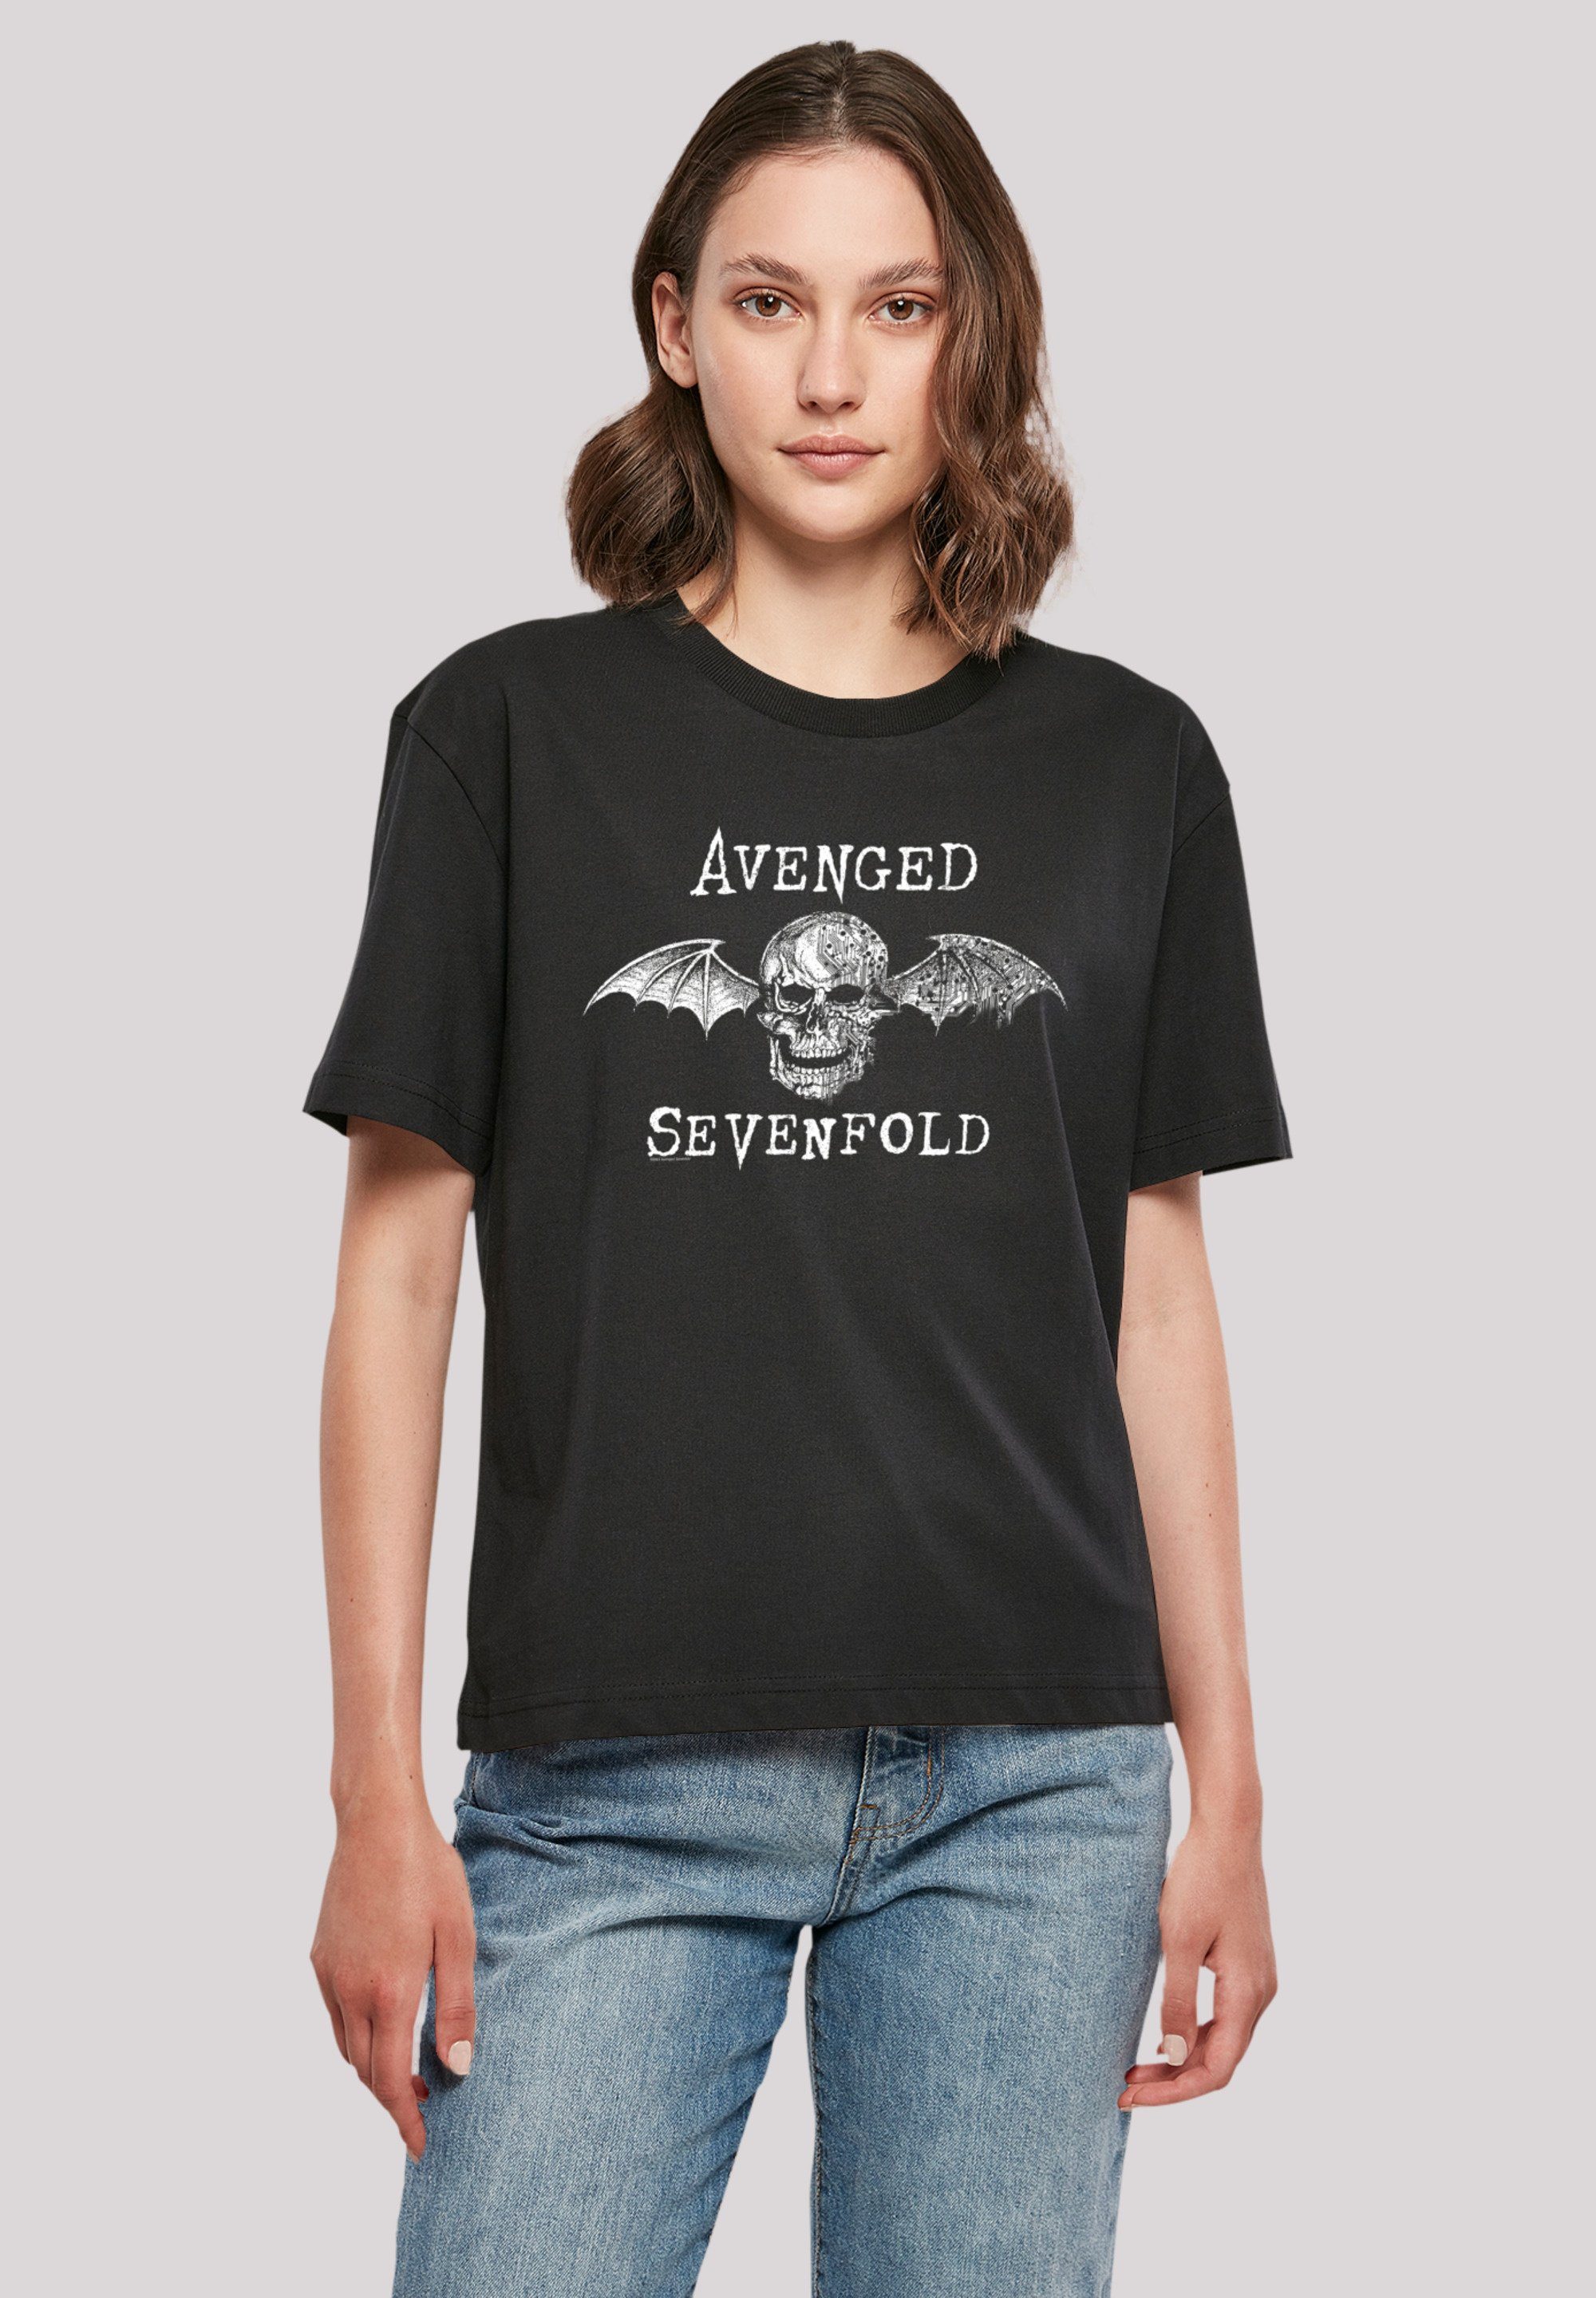 Band, lizenziertes Qualität, T-Shirt Rock Avenged Premium Offiziell Sevenfold Metal Sevenfold F4NT4STIC T-Shirt Band Cyborg Rock-Musik, Bat Avenged